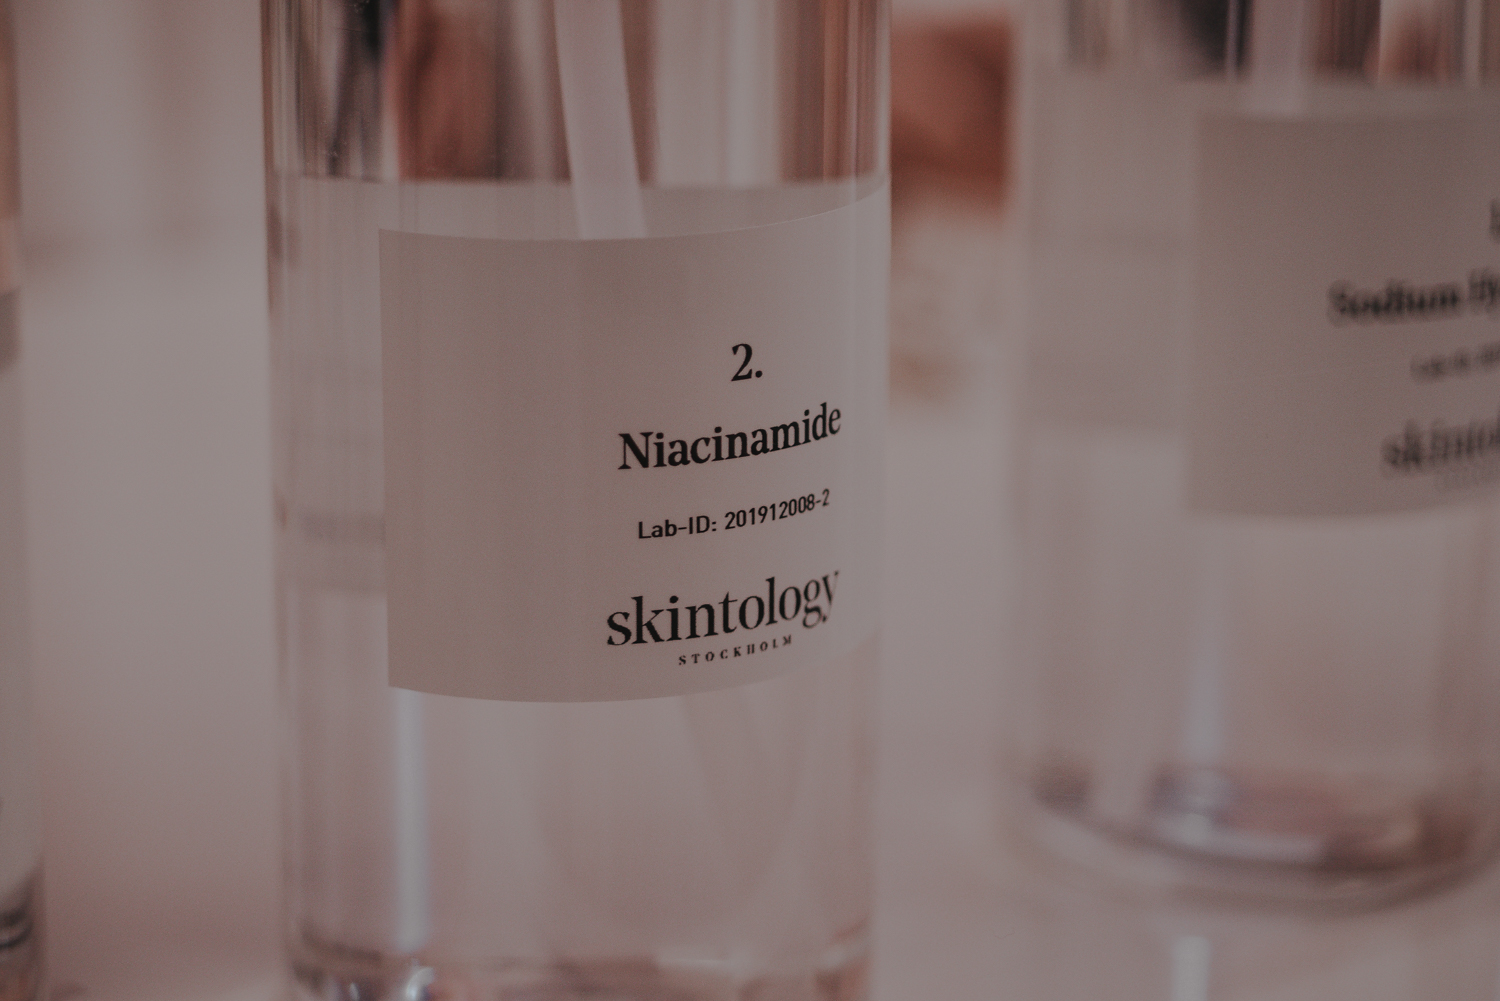 skintology stockholm